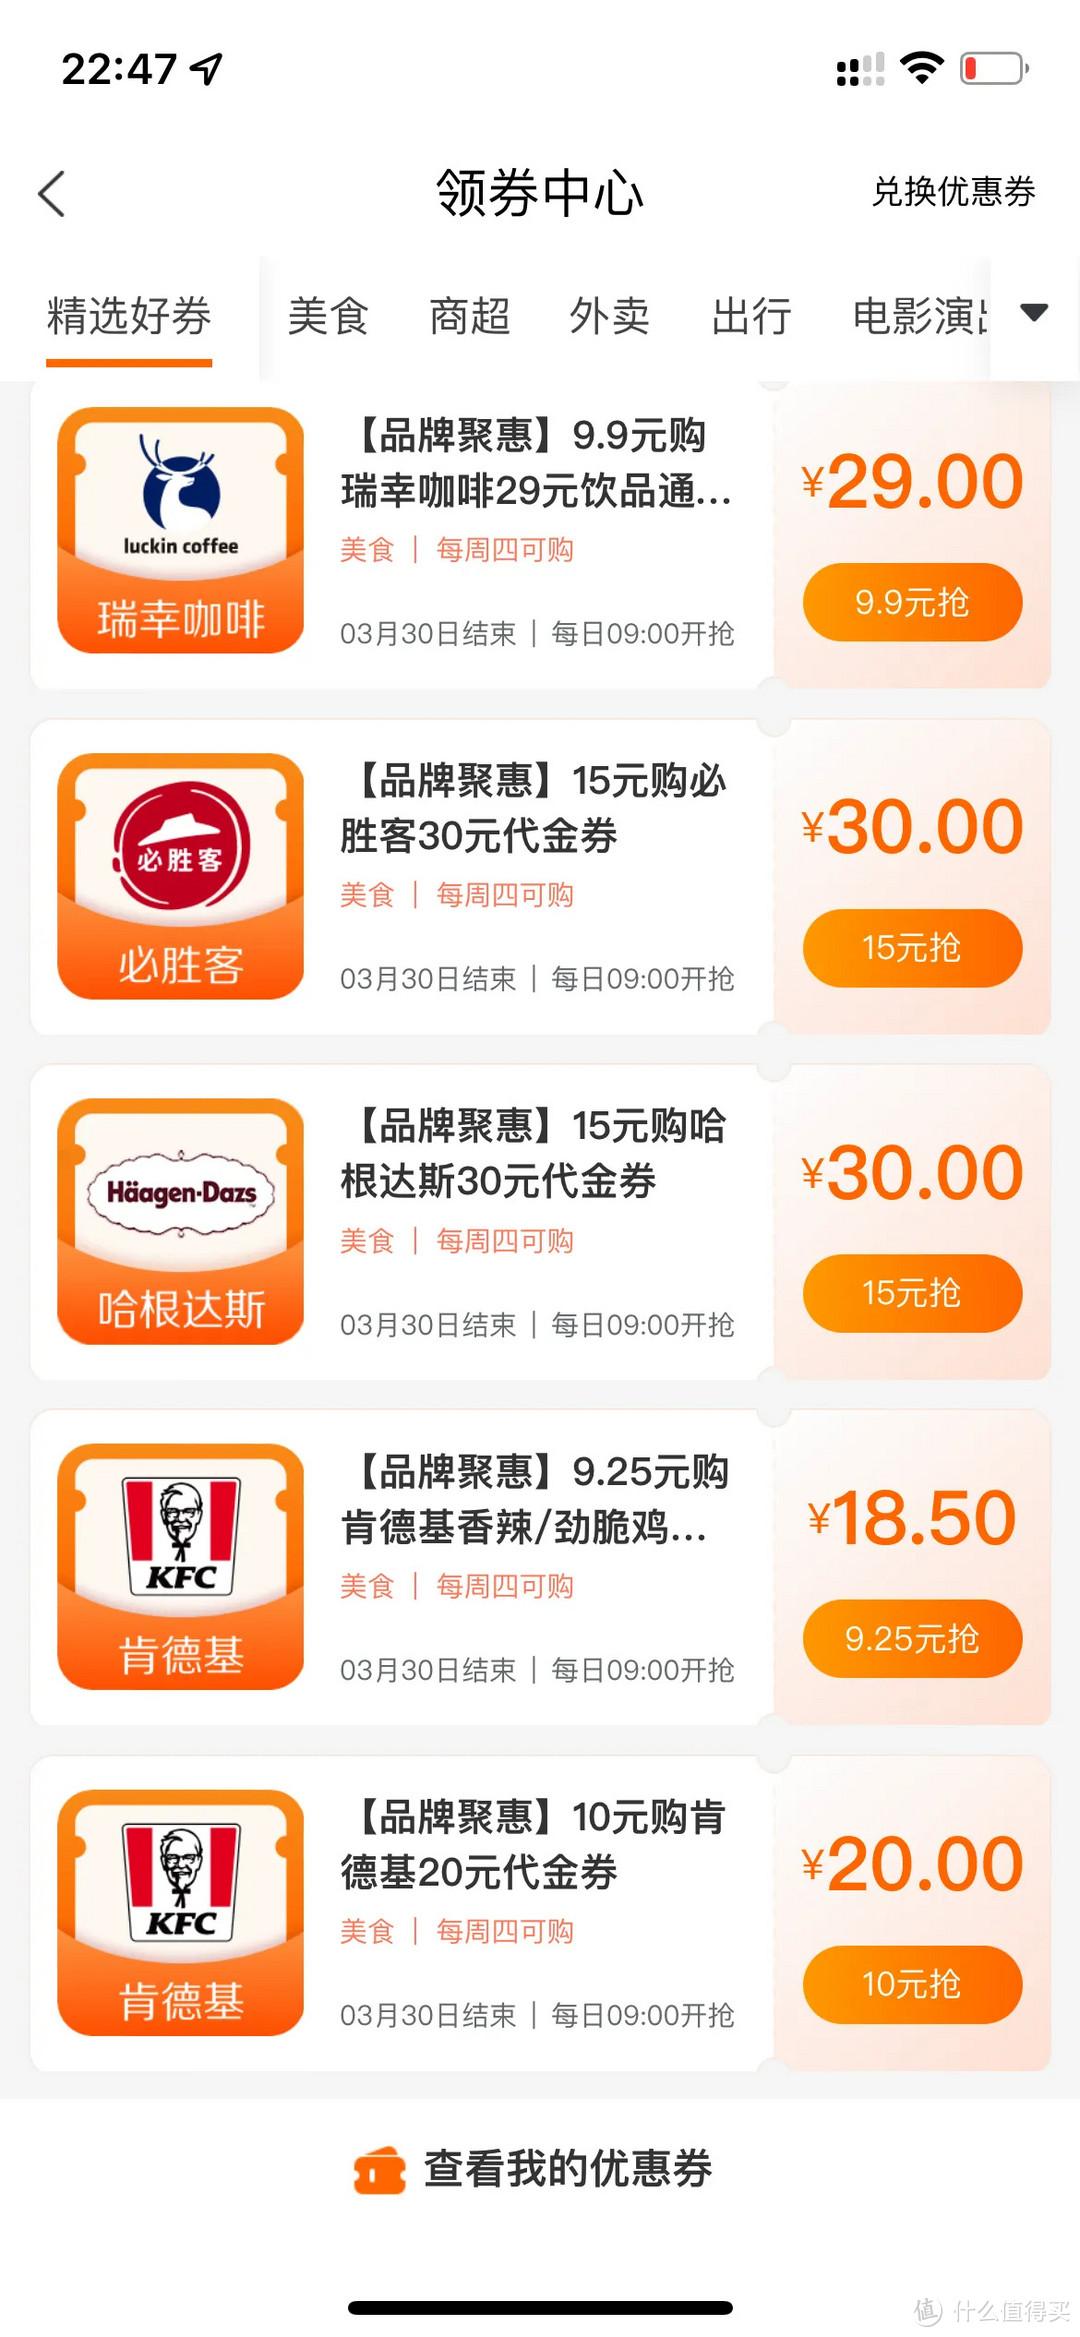 周四刷什么（3.2）：工行/建行/北京5折餐饮、中行/民生星巴克